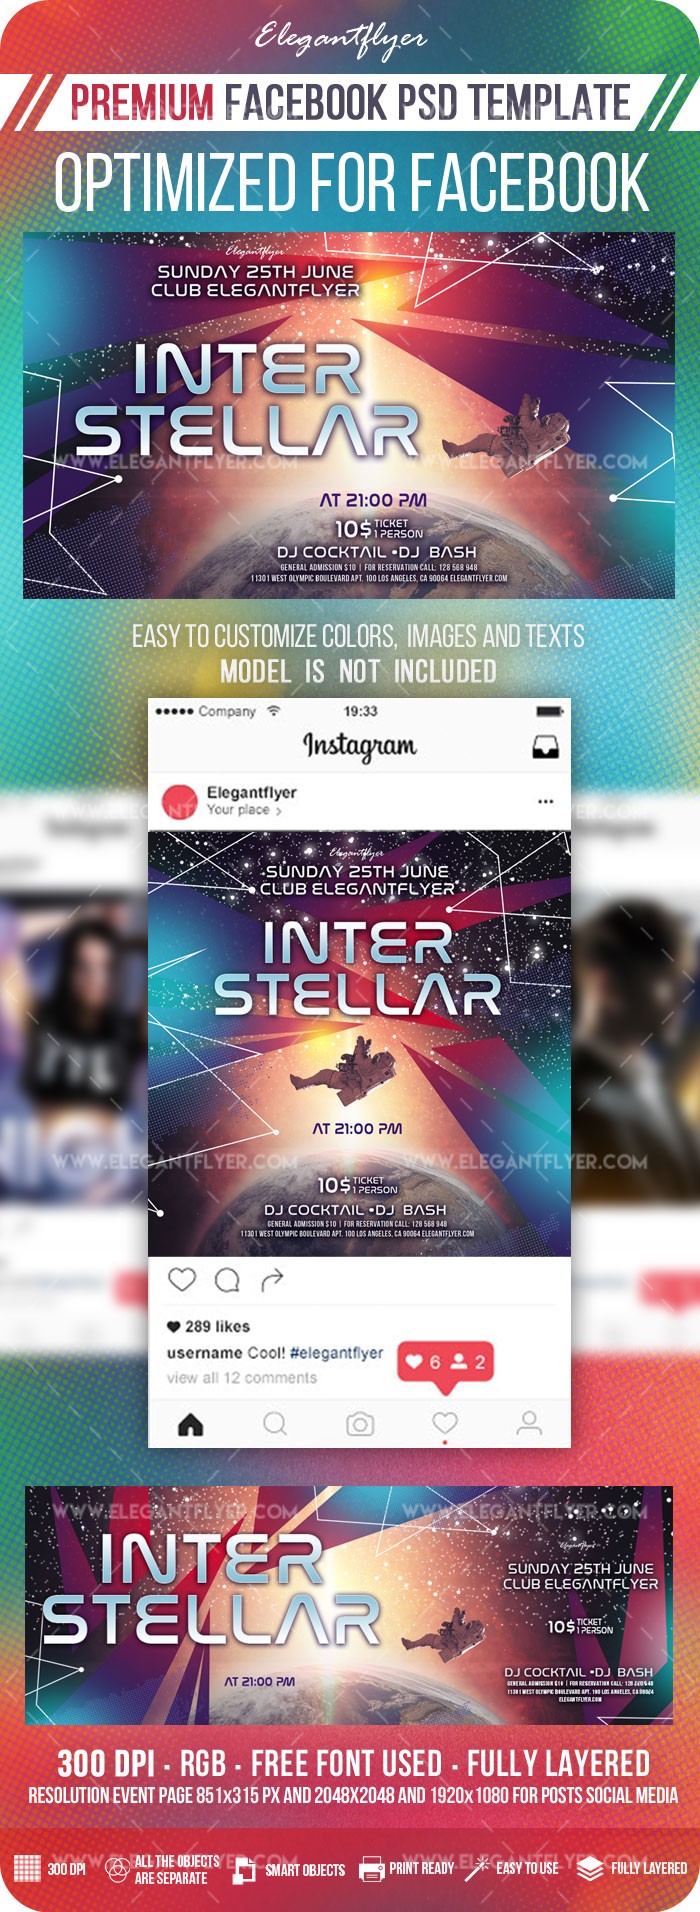 Instagram interstellare by ElegantFlyer